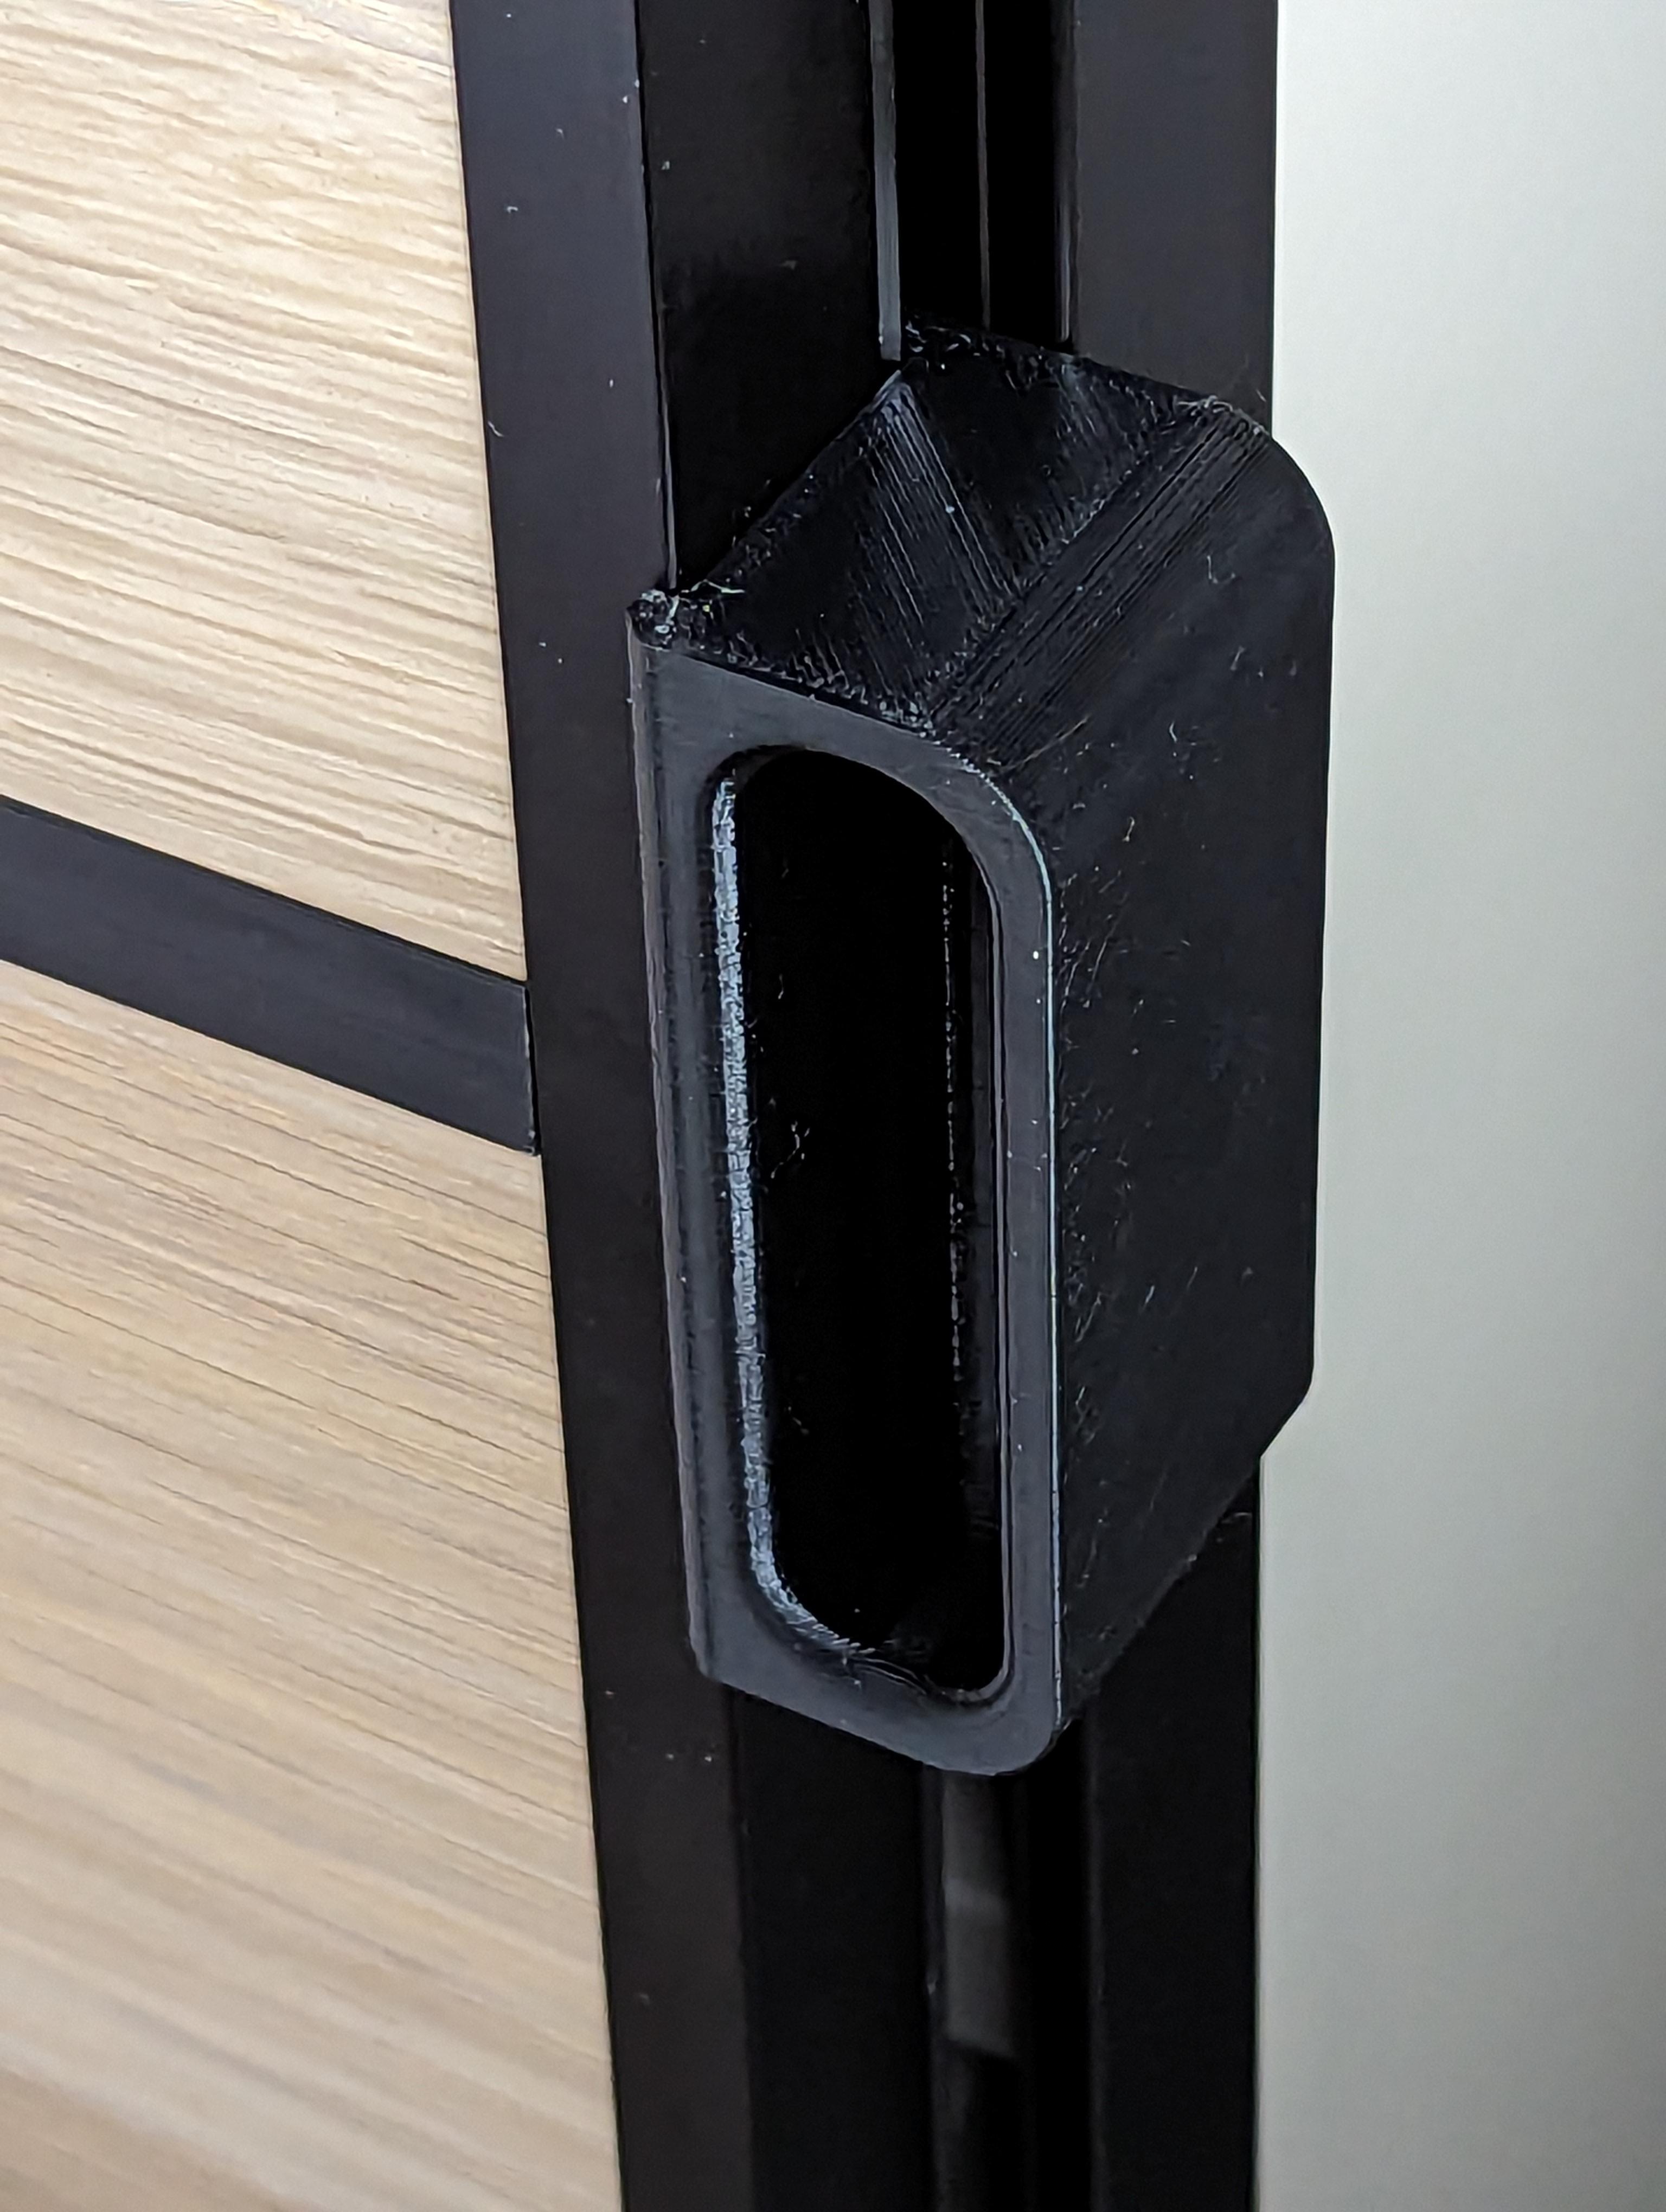 IKEA Pax Sliding Door Handle 3d model